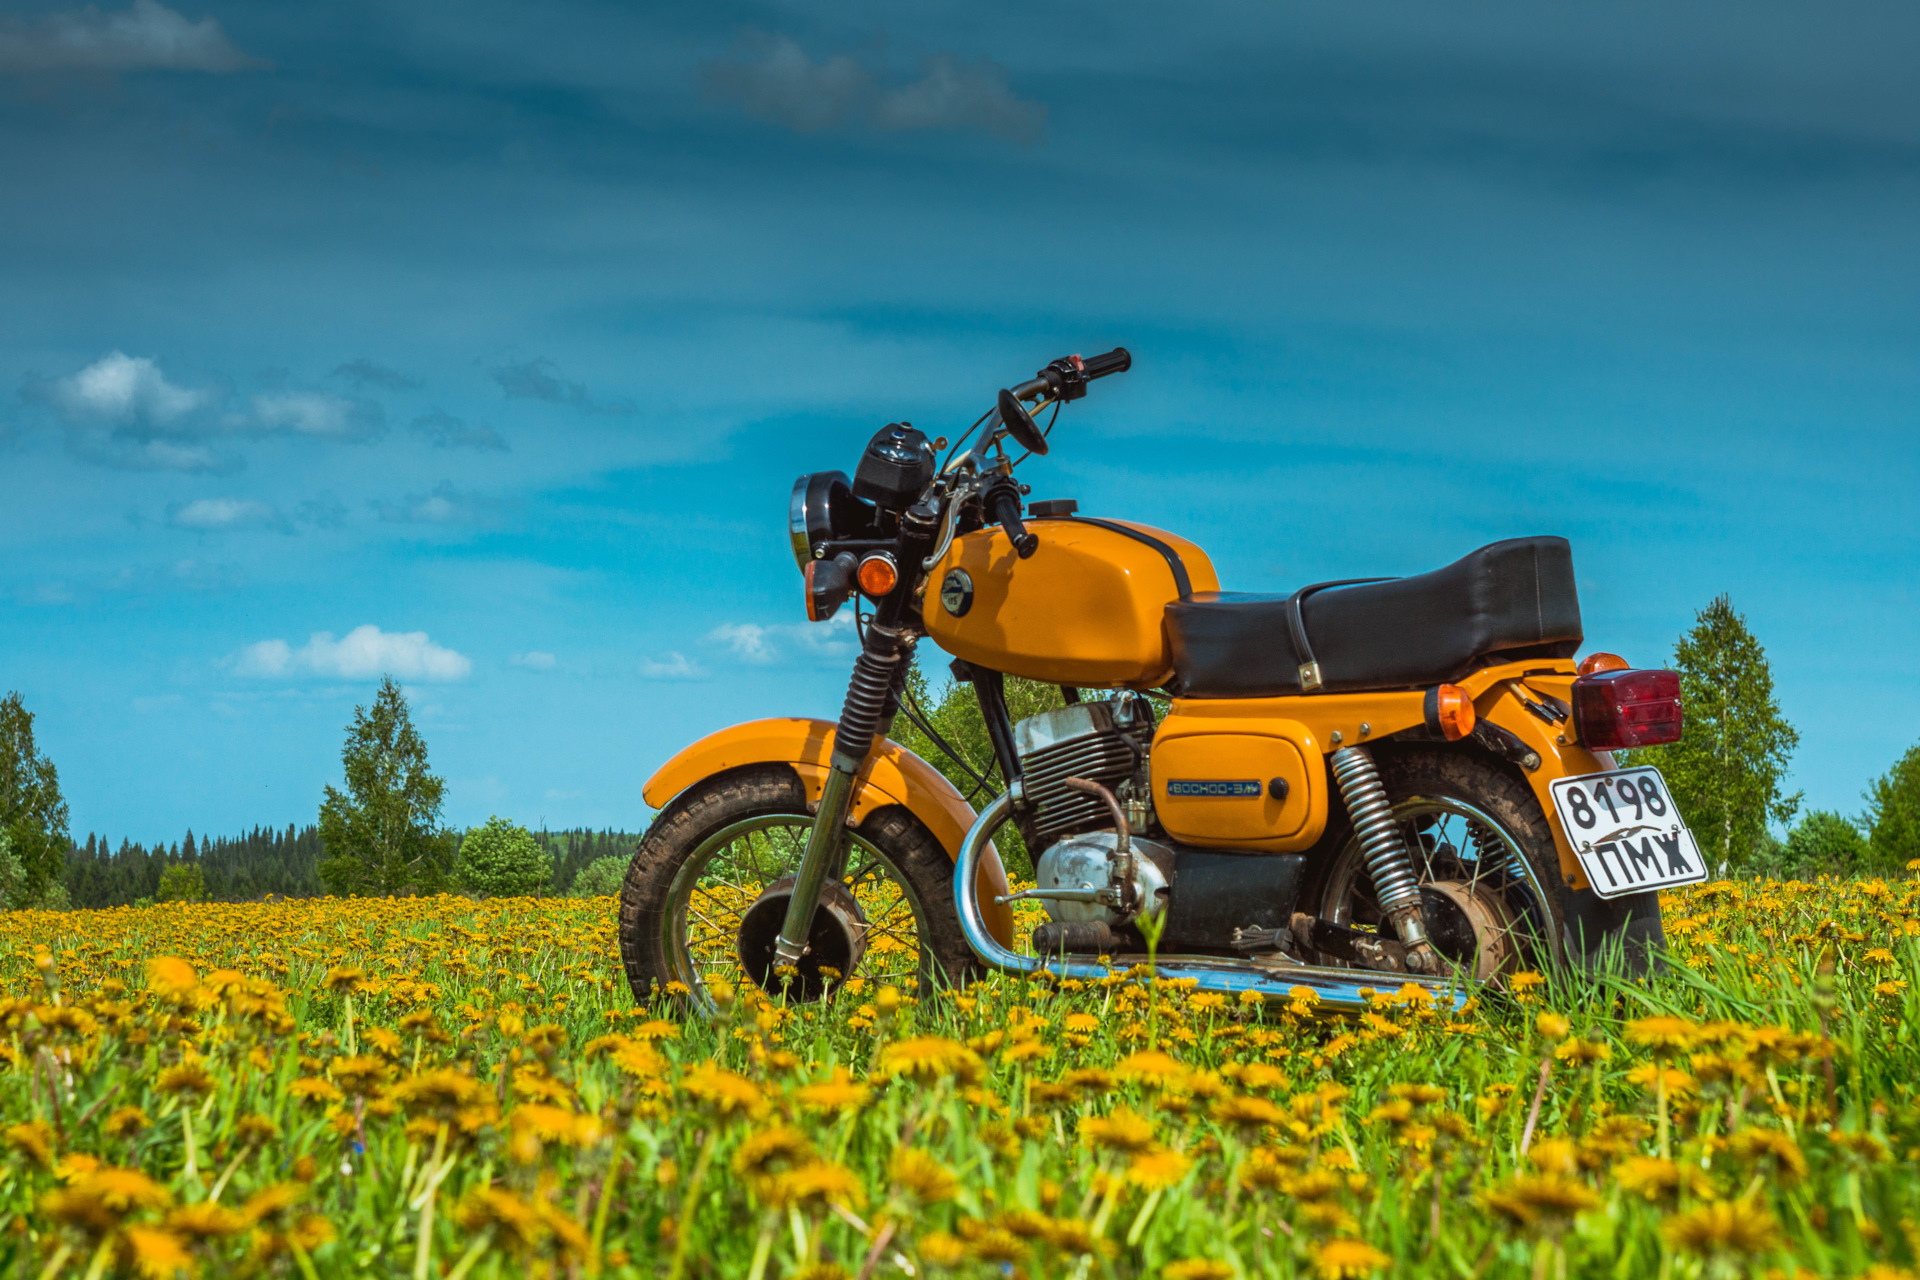 Восход 3м01. Мотоцикл Восход 3м оранжевый. Мотоцикл Восход 3м 01. Мотоцикл Восход 3м желтый. Восход 3м01 турист.